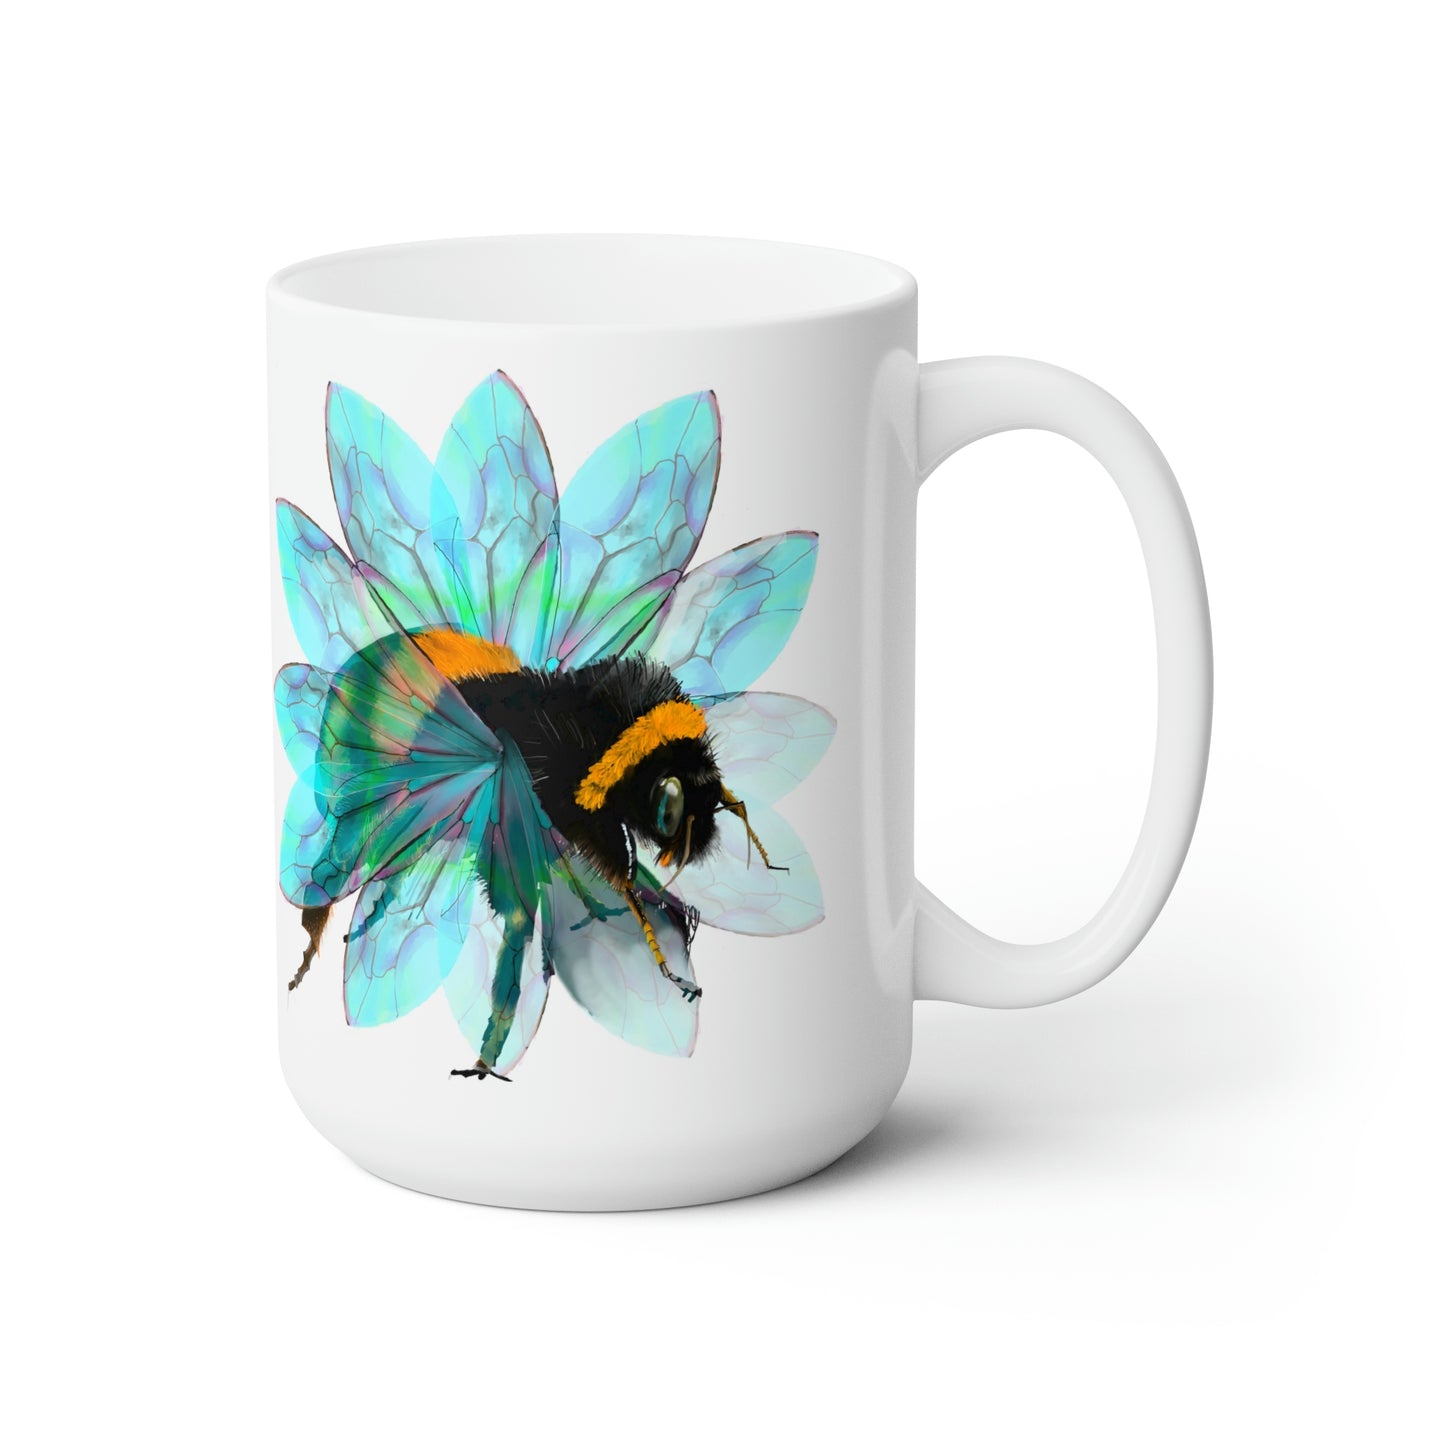 Bee in the Flower Ceramic Mug 15oz